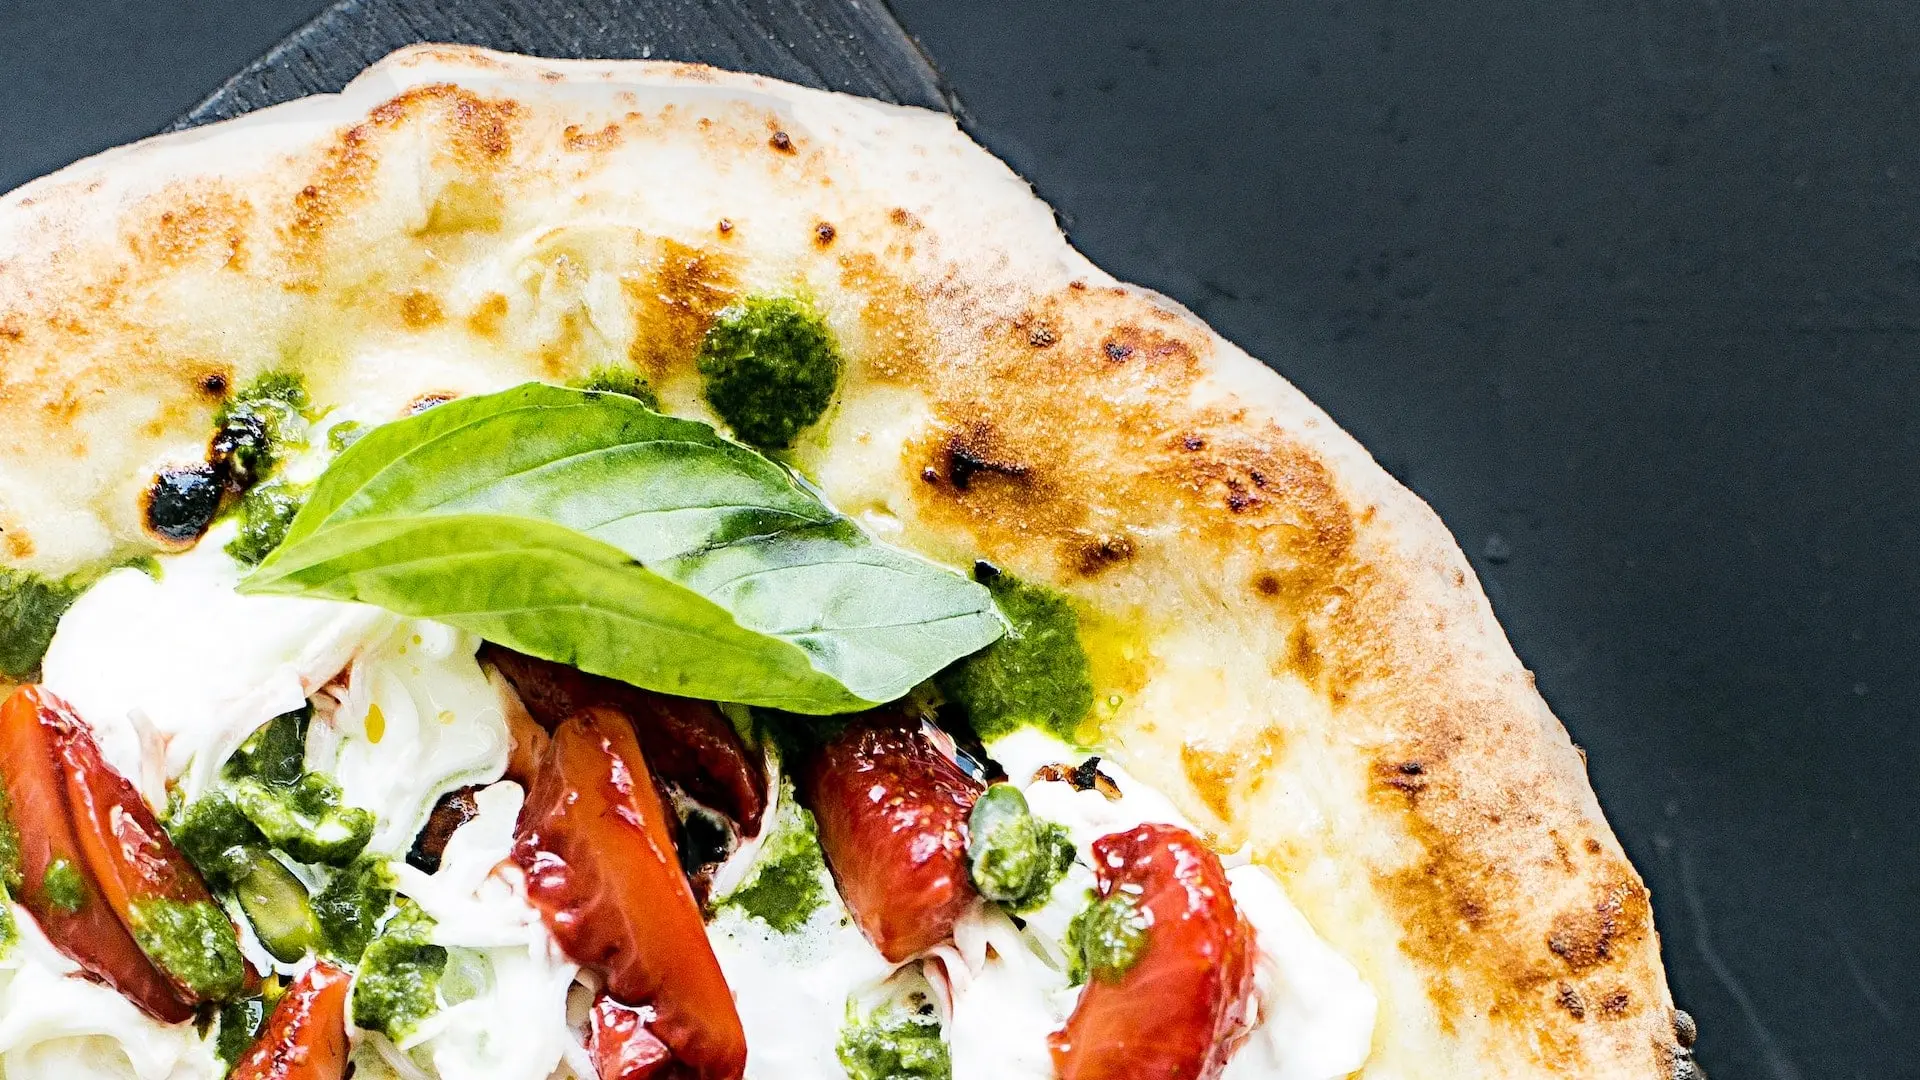 Secrets to Make Your Pizza Taste Better